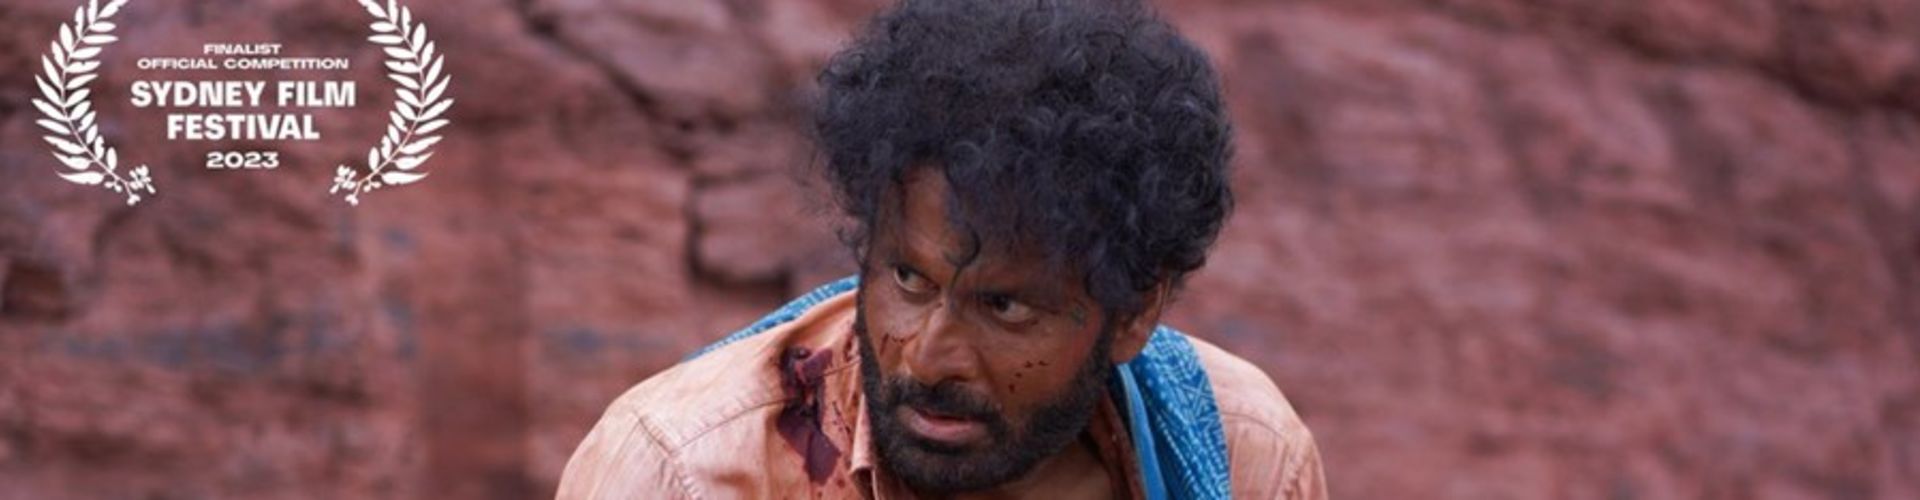 Manoj Bajpayee Starrer Joram Will Screen At Sydney Film Festival